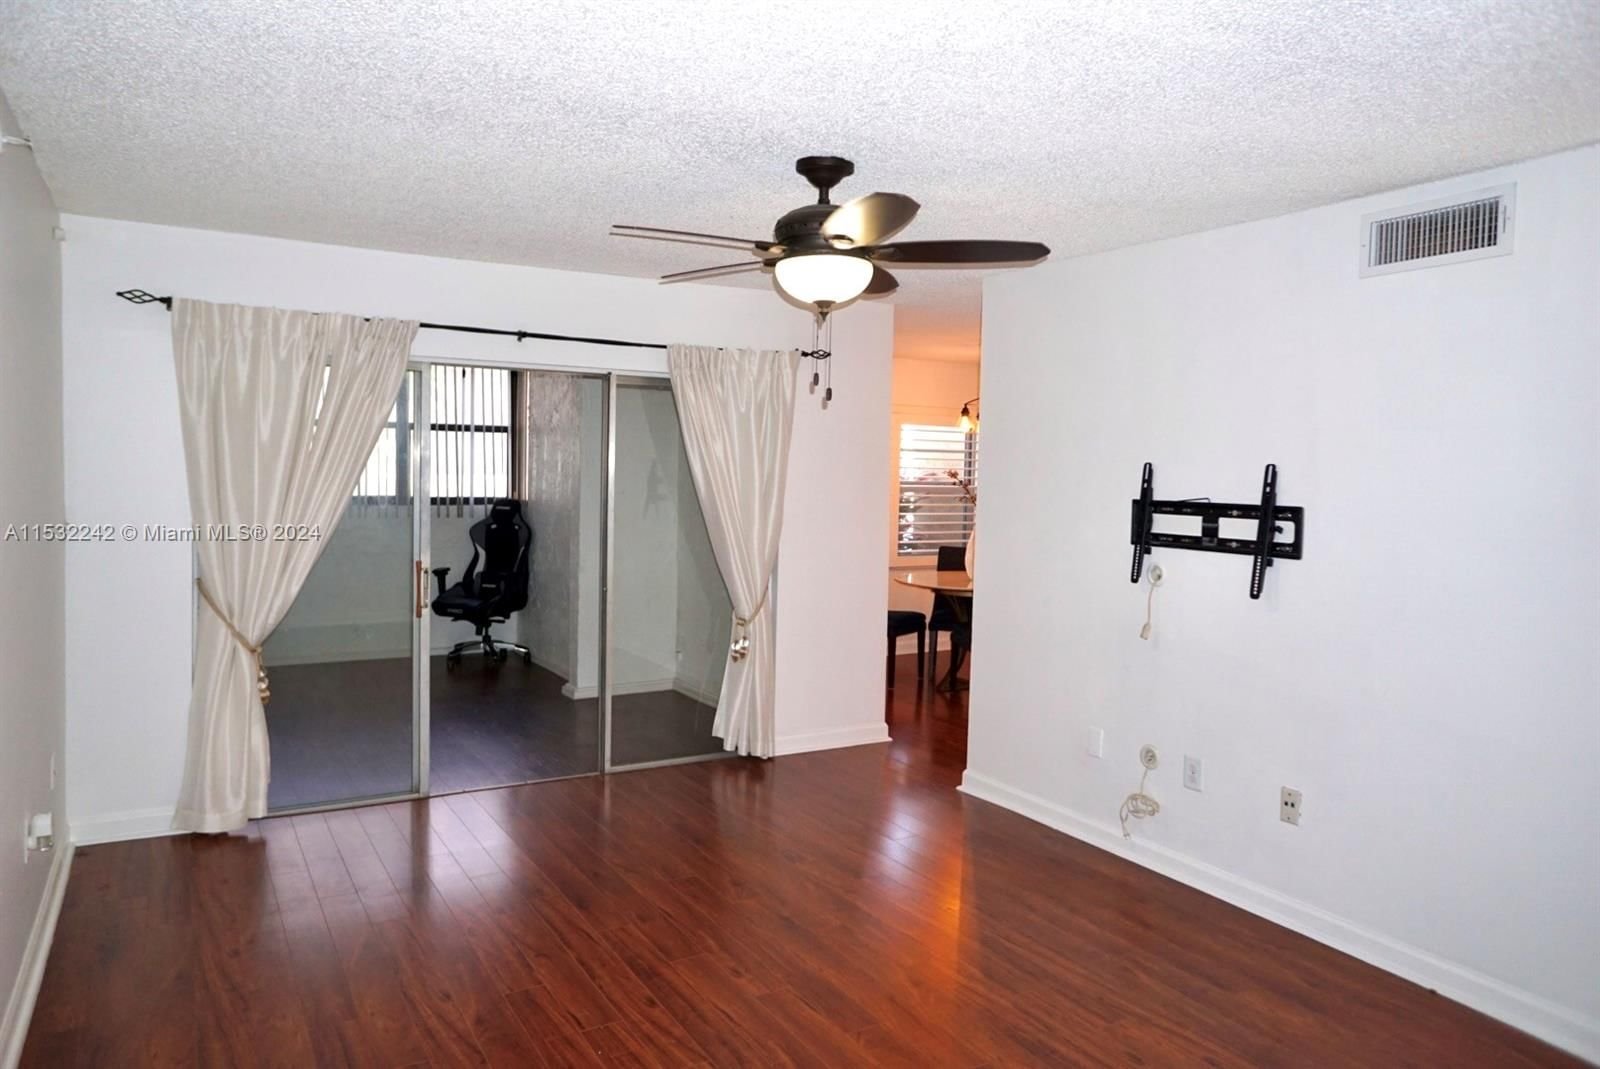 Real estate property located at 10661 108th Ave #1D, Miami-Dade County, THE PRADO CONDO, Miami, FL